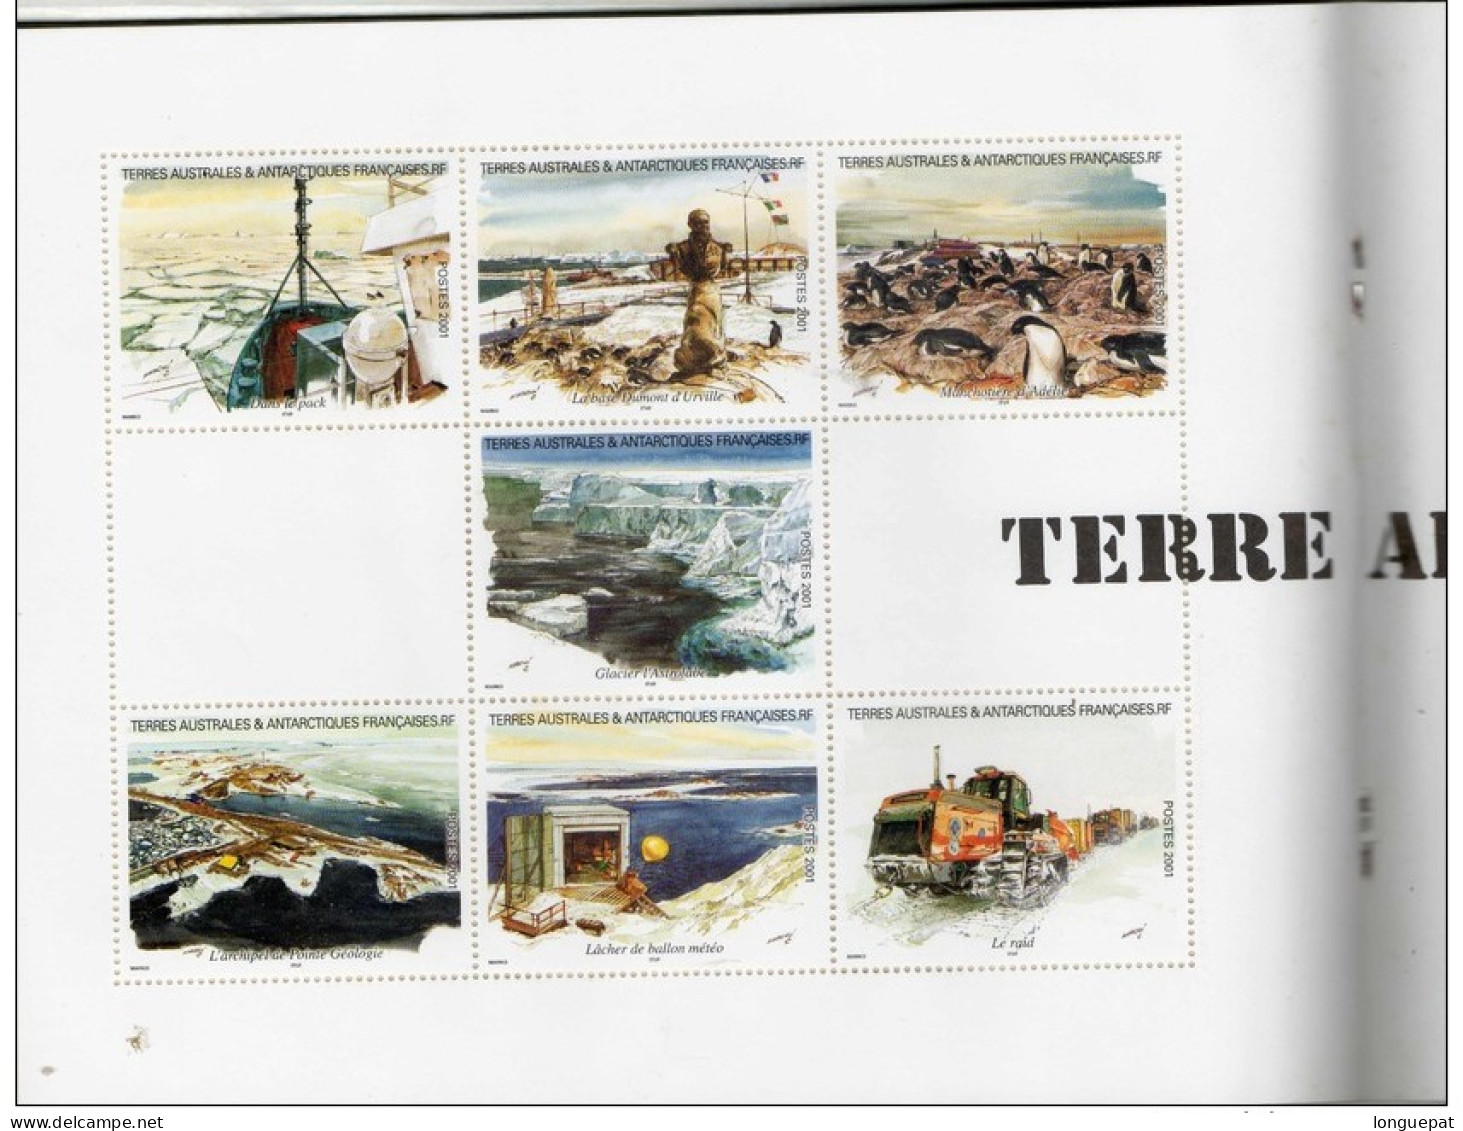 T.A.A.F. - "Carnet de voyage"- Aquarelles de Serge Marko- Carnet de 14 feuillets comportant les 28 timbres,